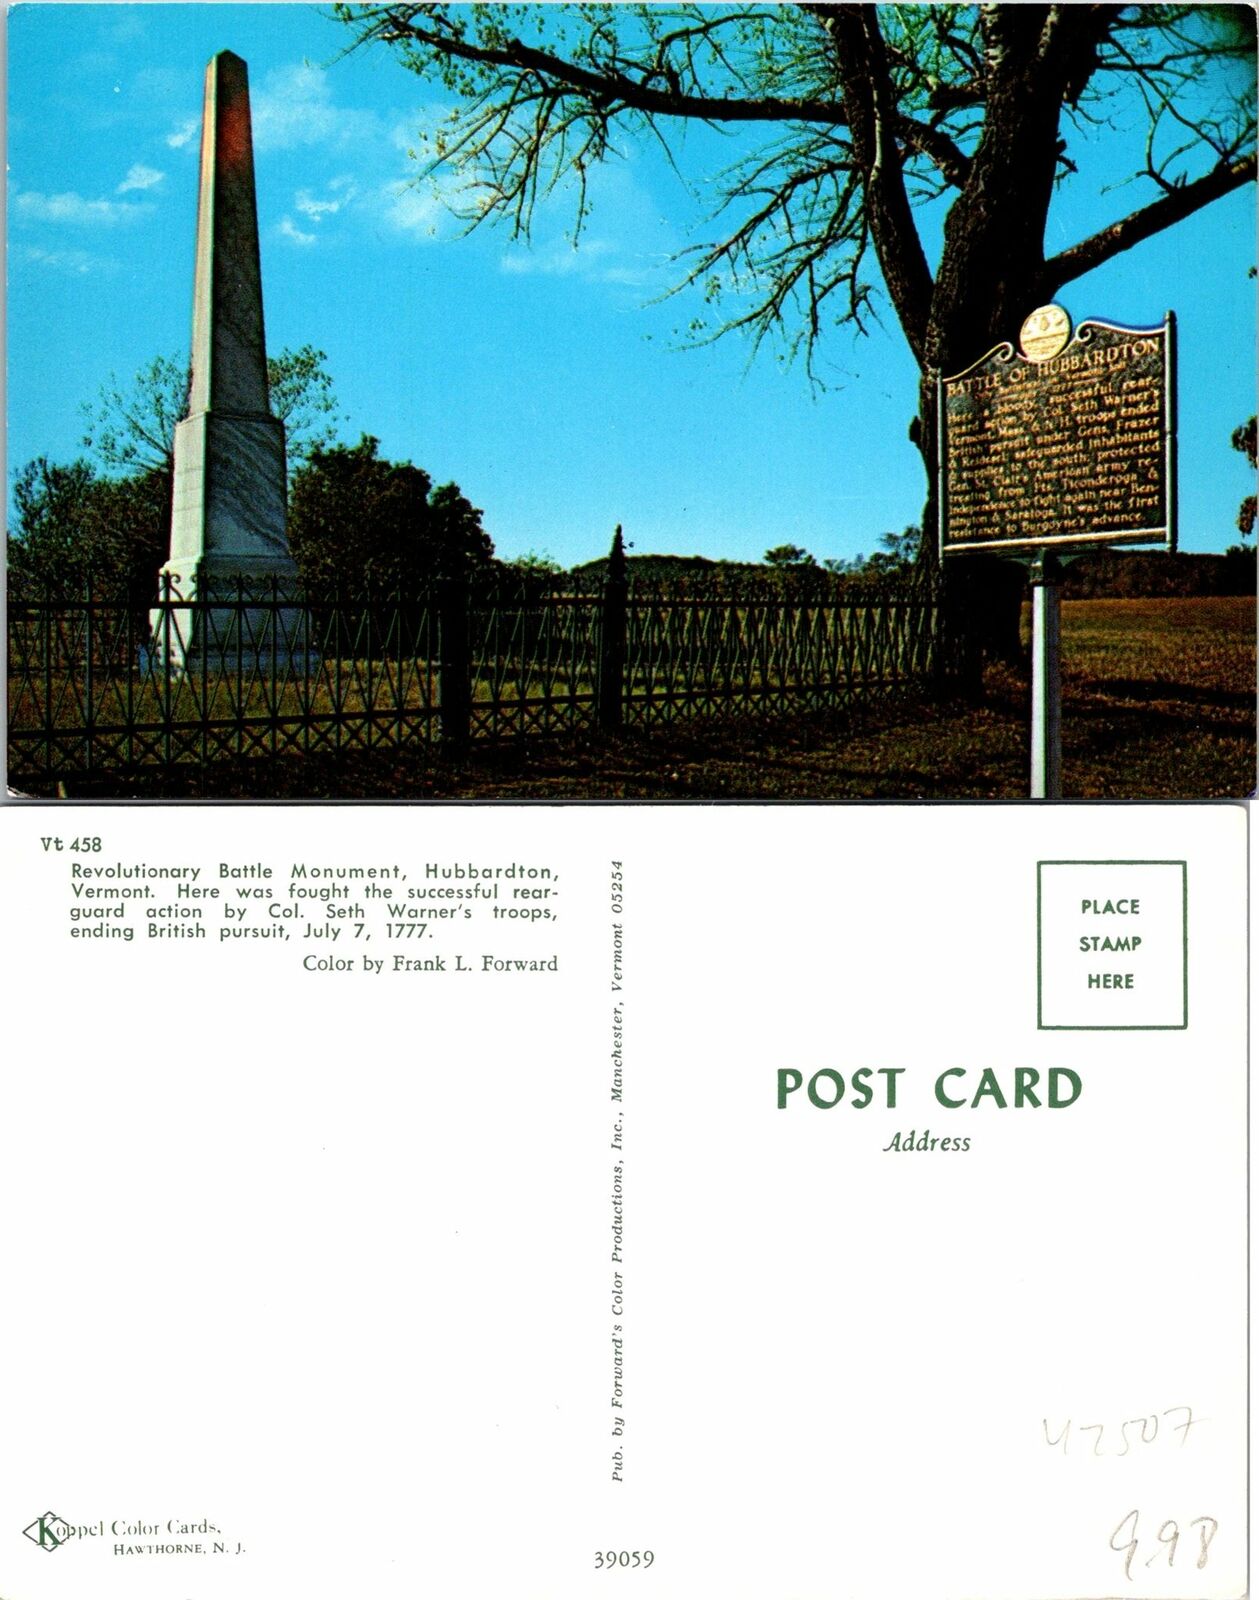 Hubbardton VT Revolutionary Battle Monument Postcard Unused (42507)